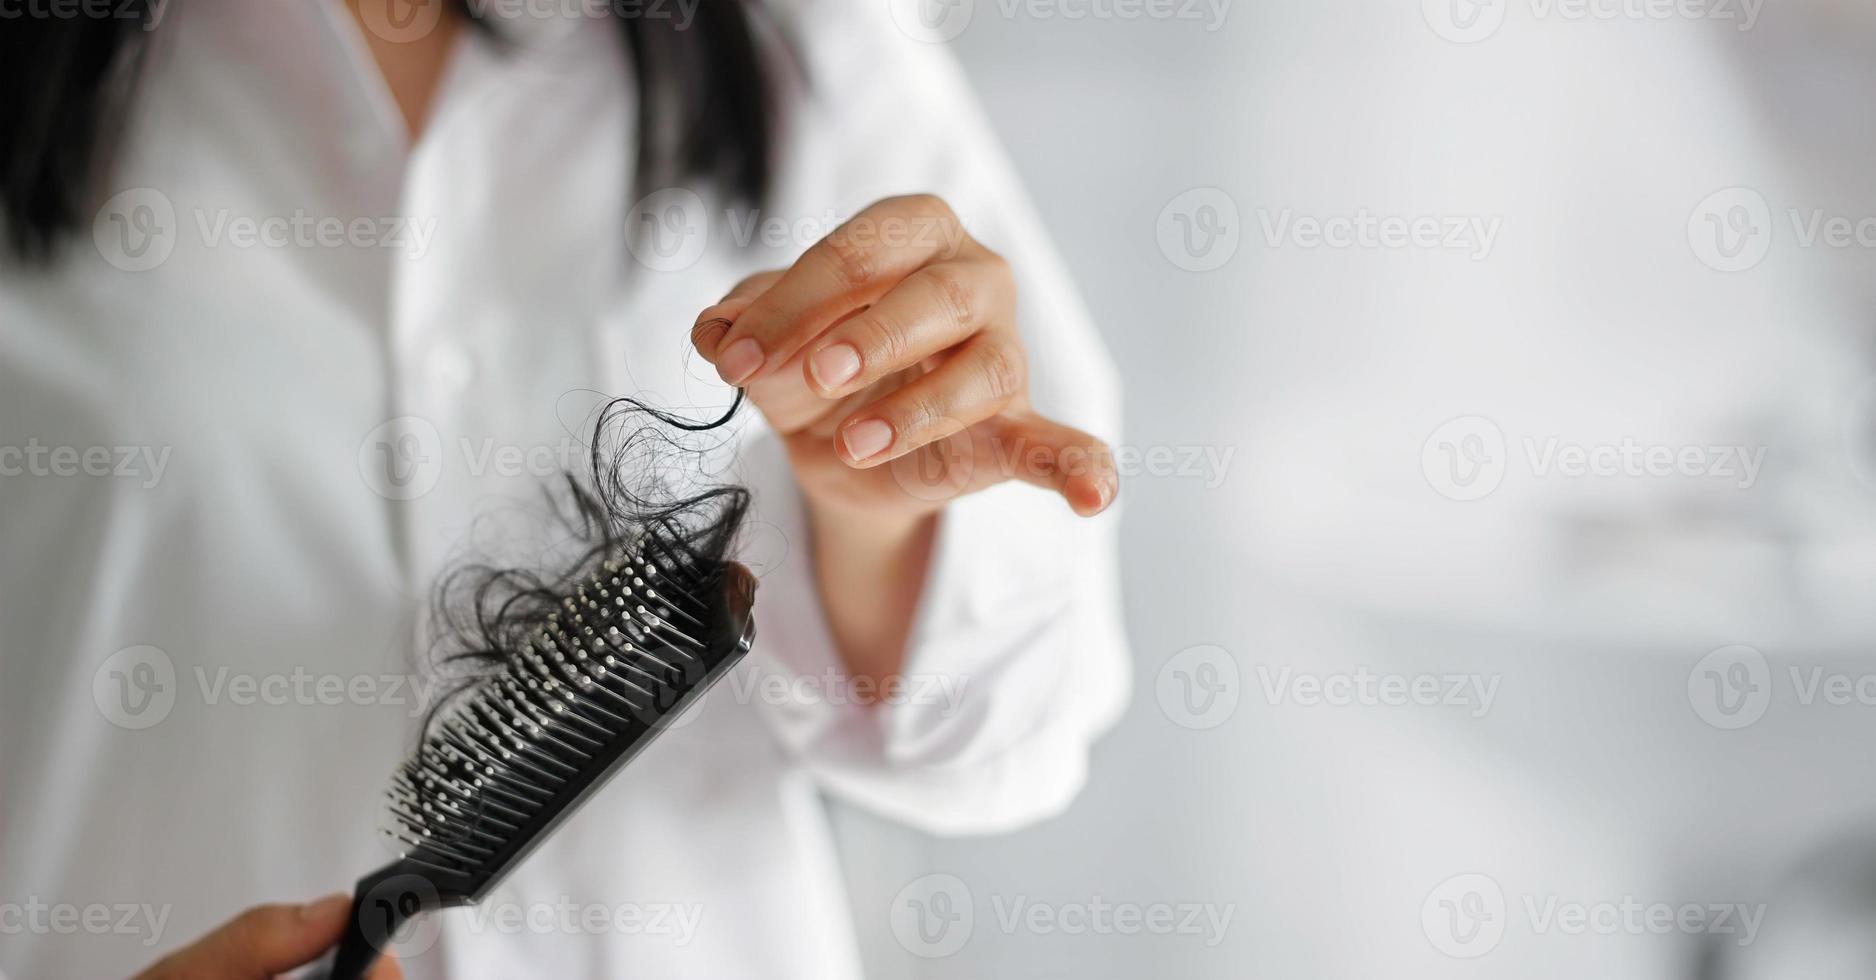 Frau verliert Haare auf Haarbürste in der Hand, weicher Fokus foto